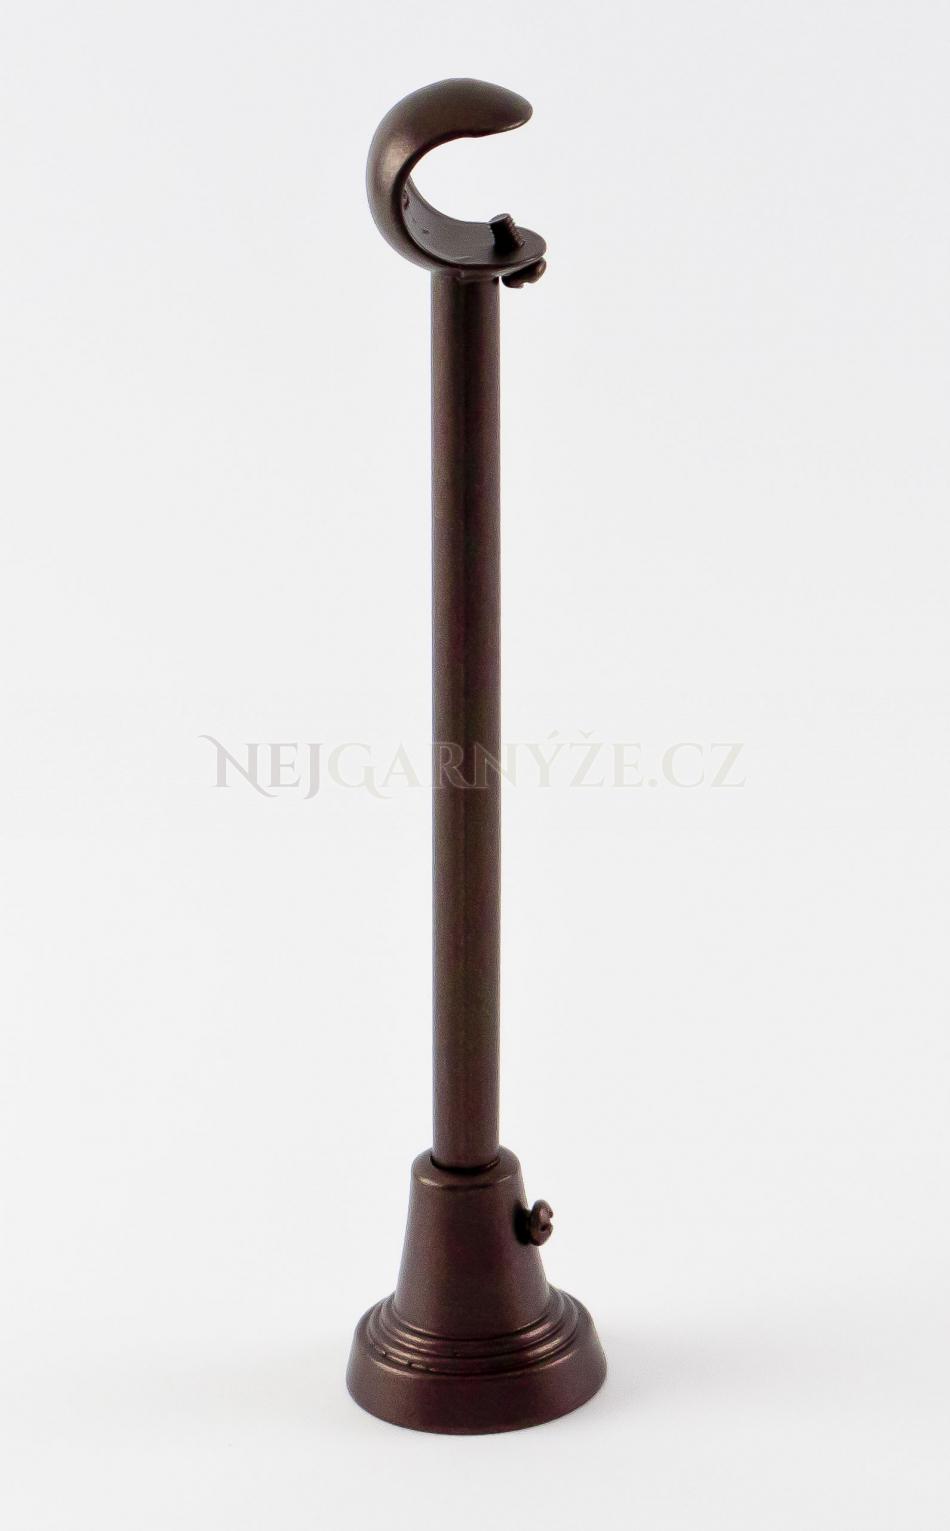 Kovový držák jednotyčový Ø 19 mm Wenge